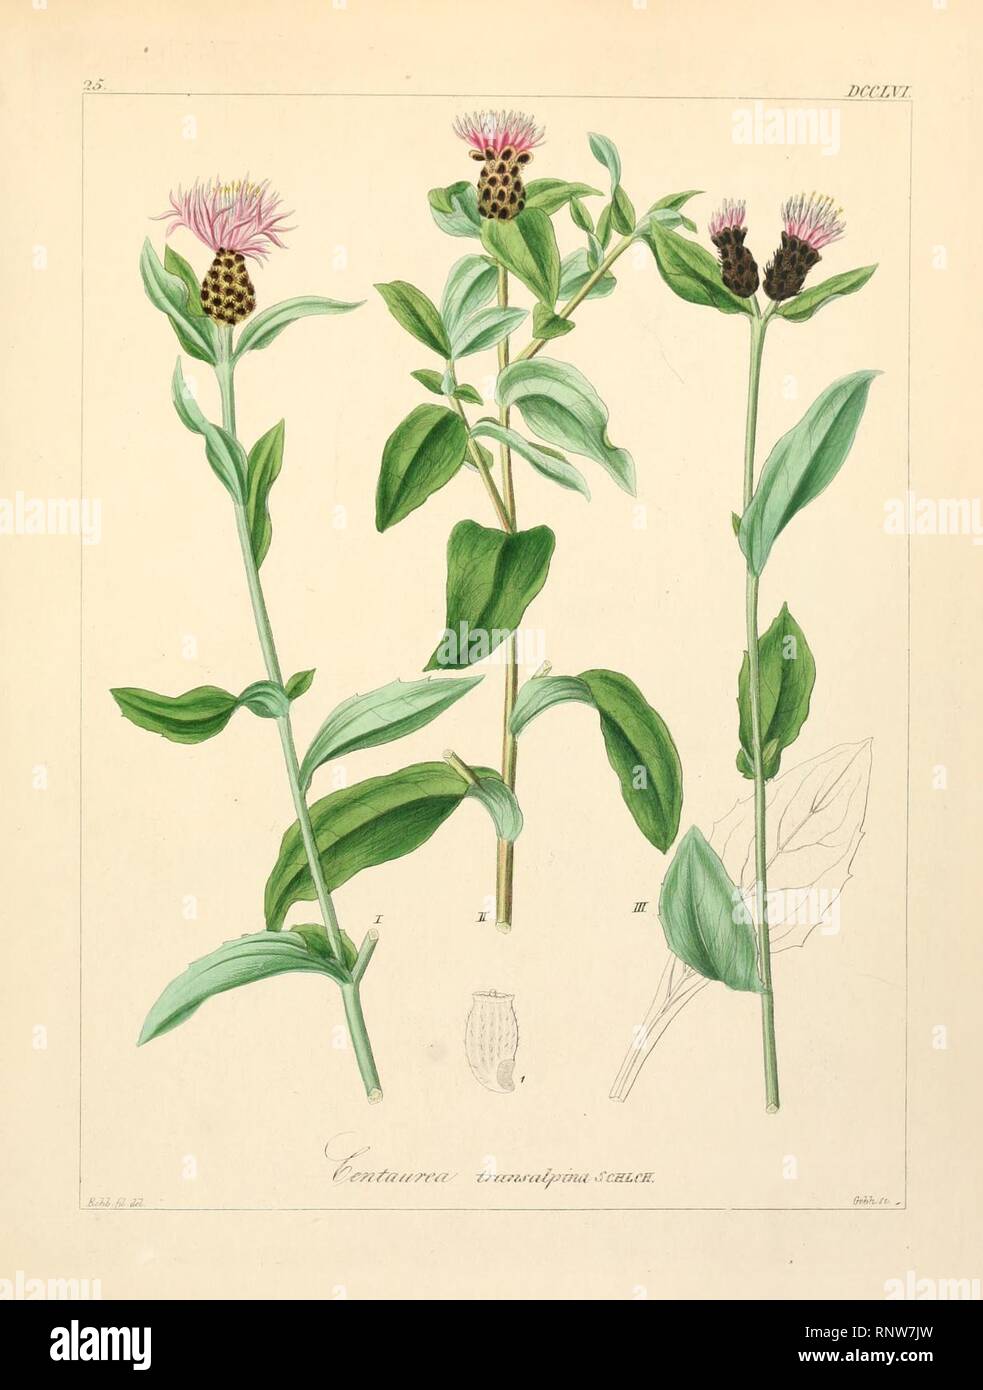 Centaurea nigrescens ssp transalpina. Stock Photo